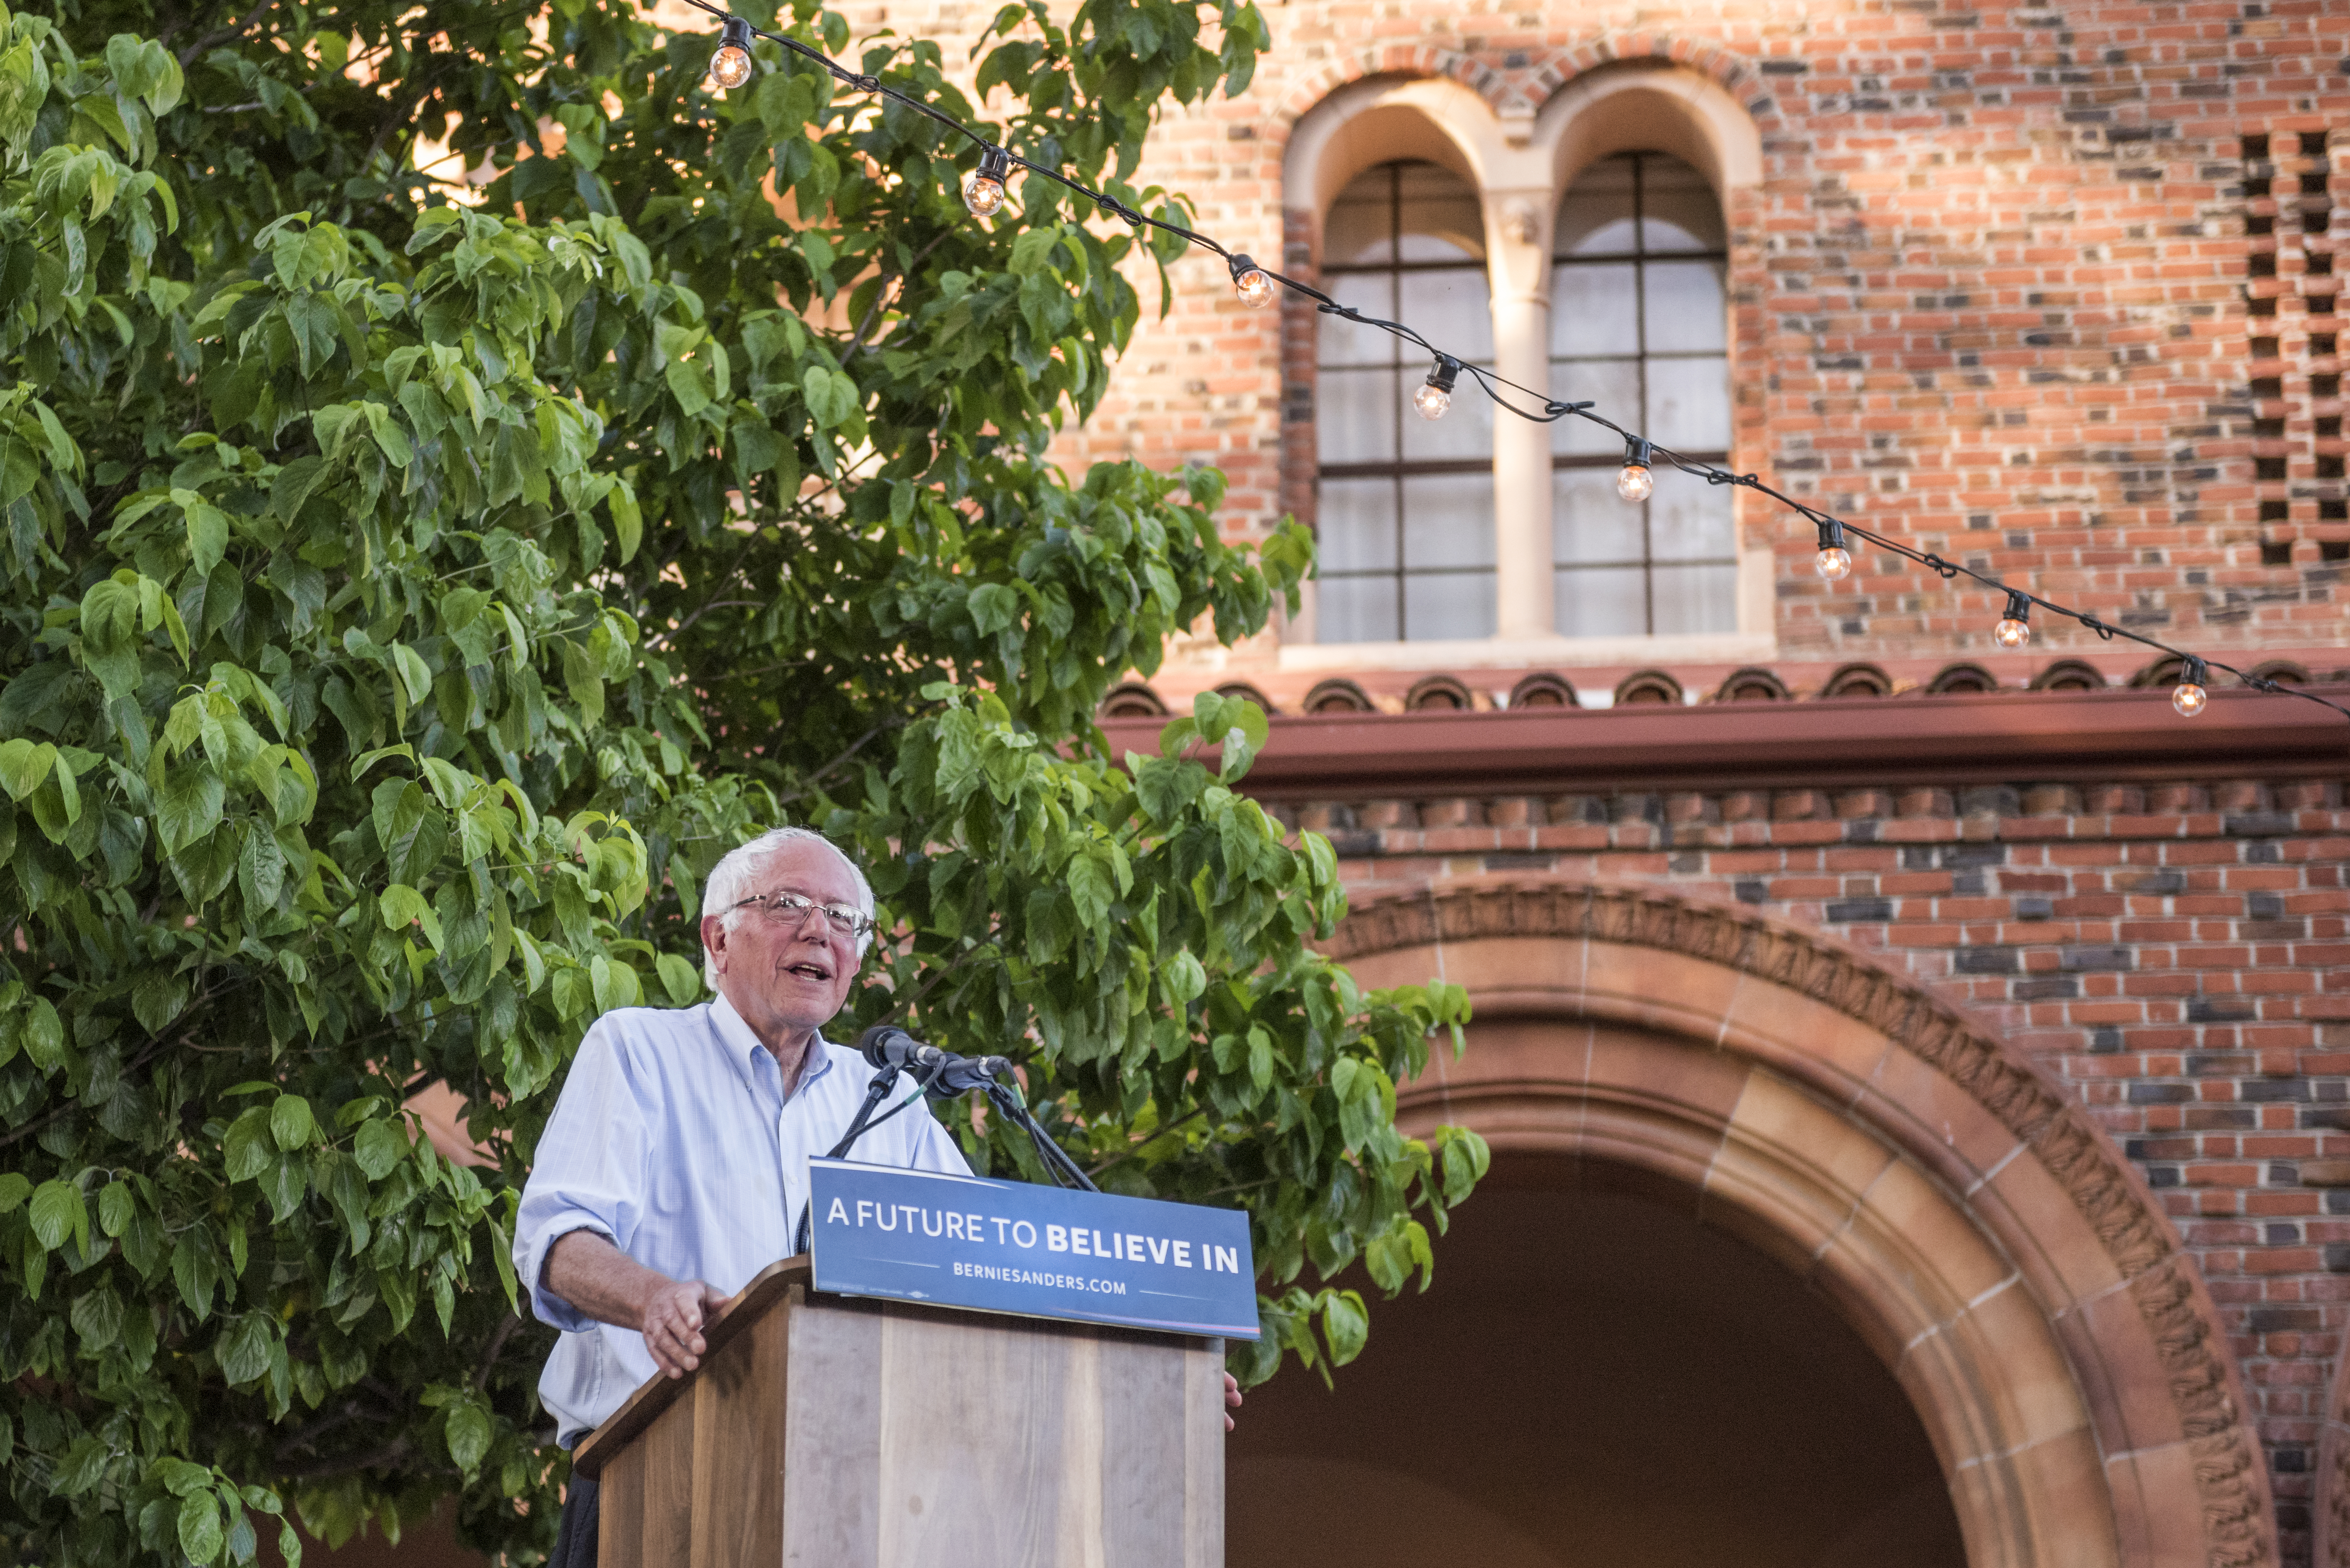 Bernie Sanders speaks at a podium in front of Laxson Auditorium.